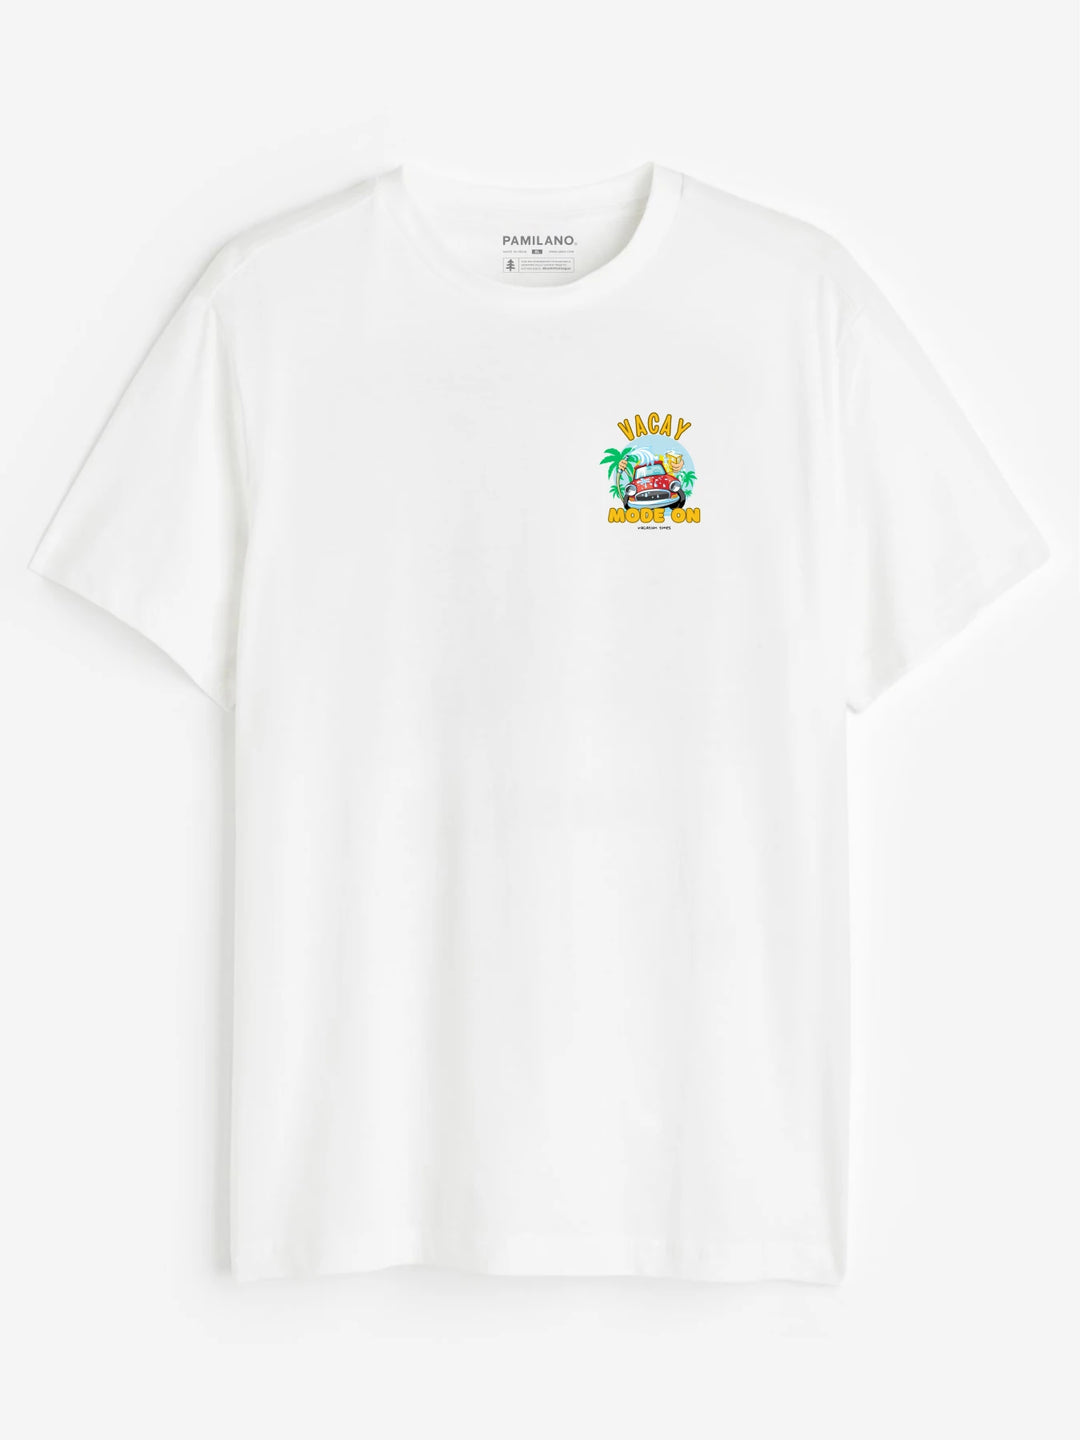 Vacay Mode On - Unisex T-Shirt